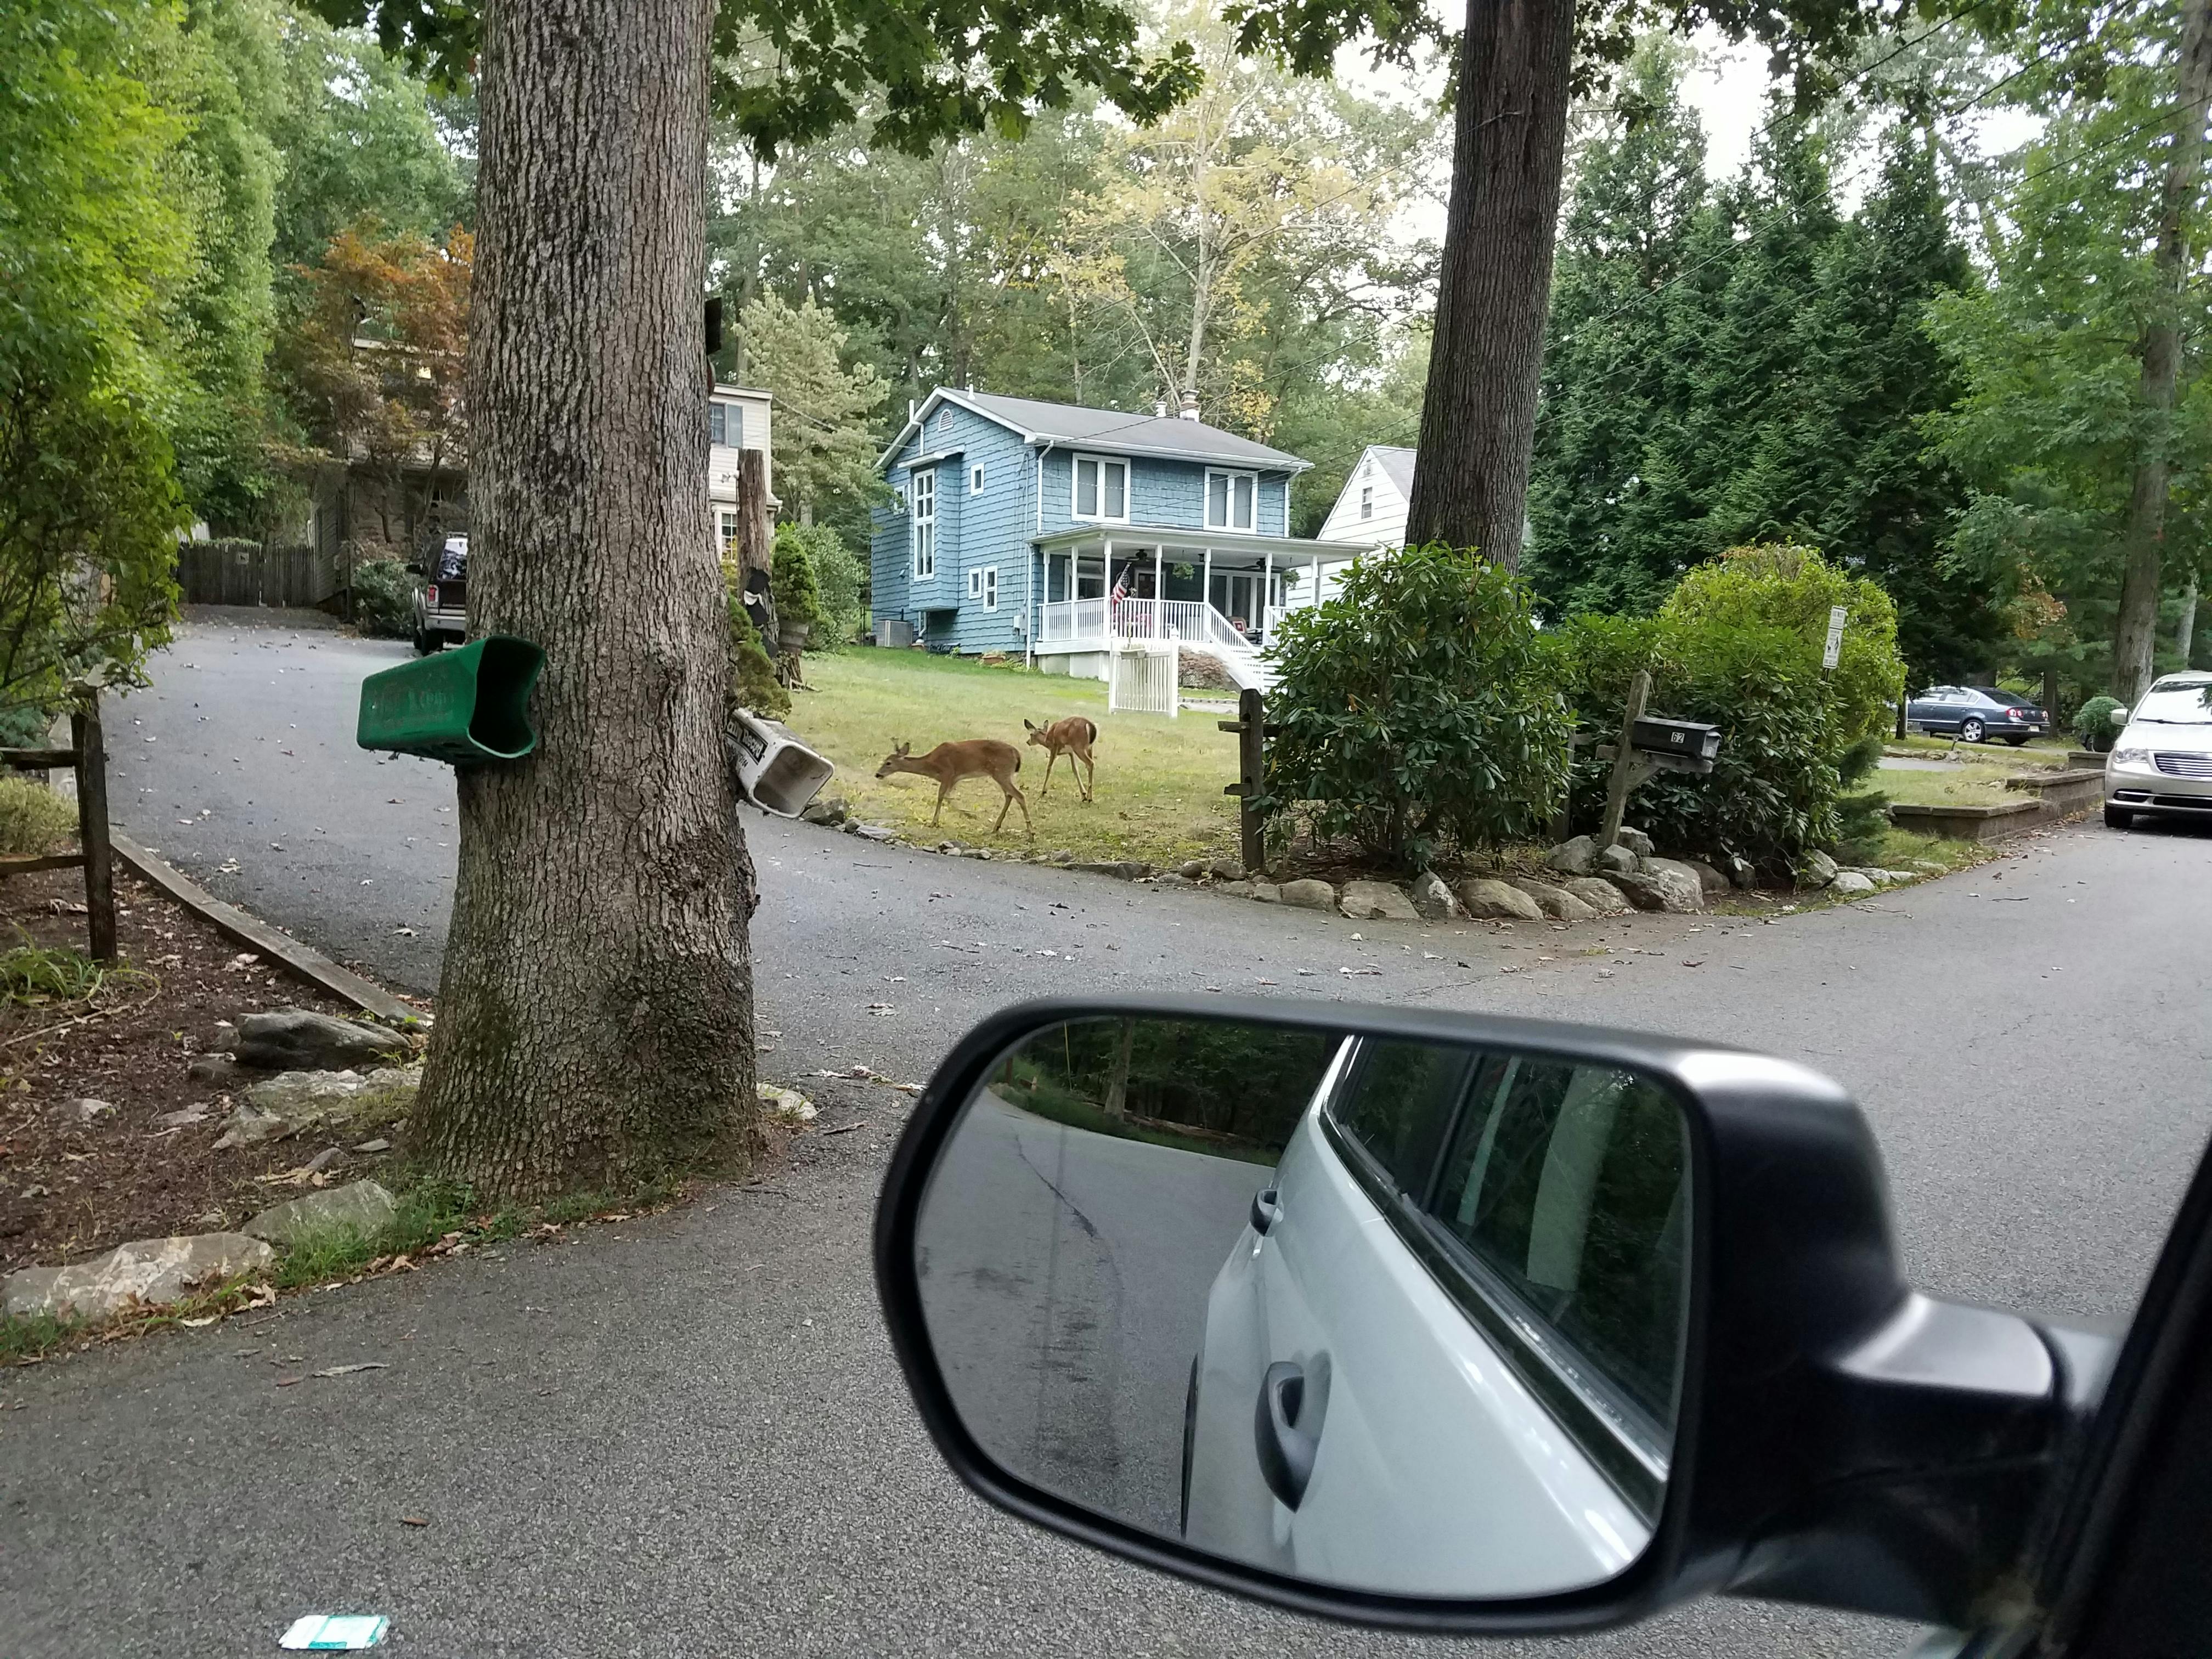 deer casually walking in nj neighborhood